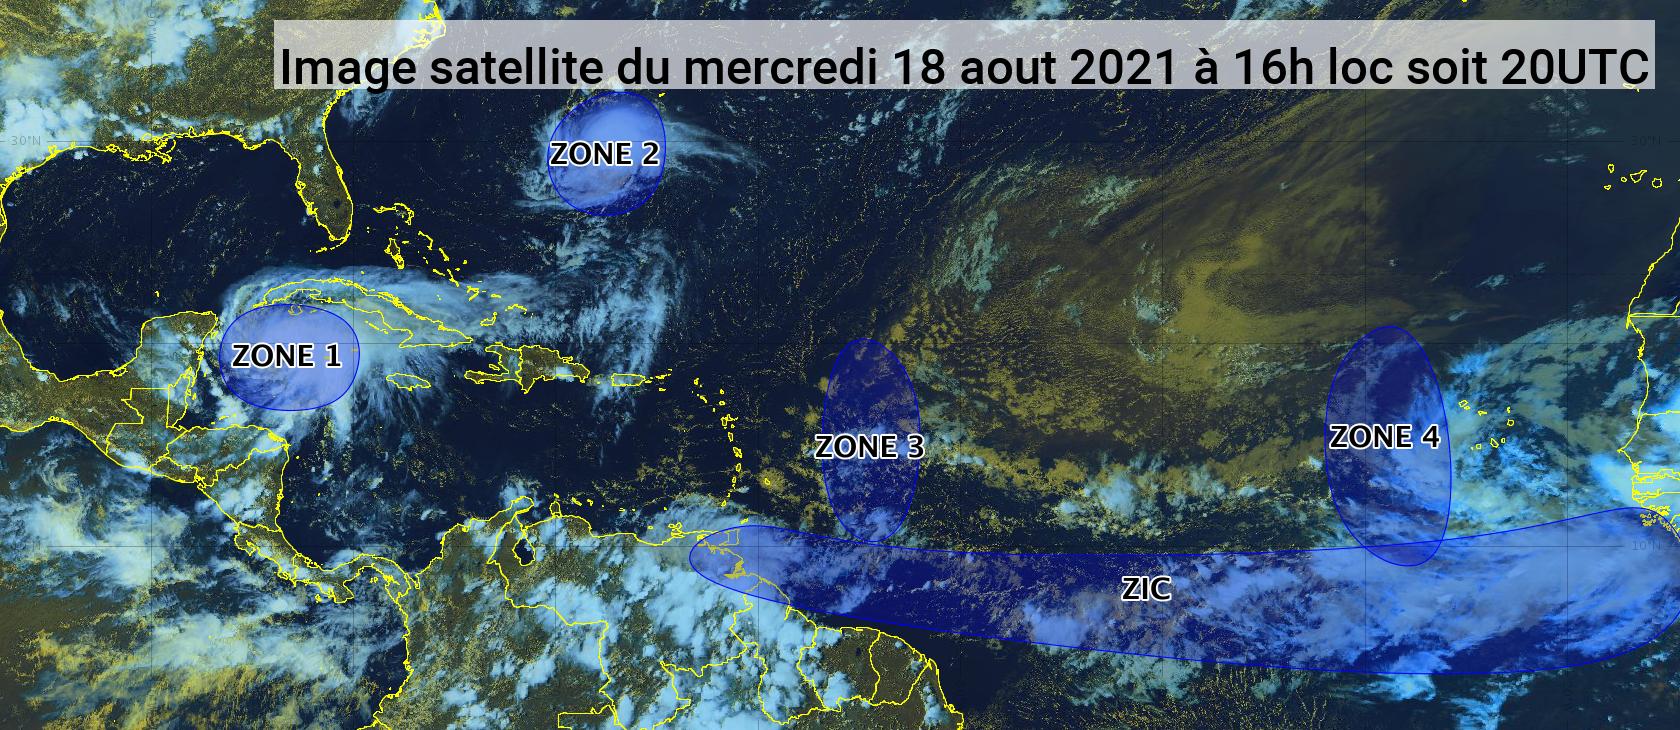     L'onde tropicale n°31 amène de fortes pluies sur les Petites Antilles (bulletin du 18/08/21)

